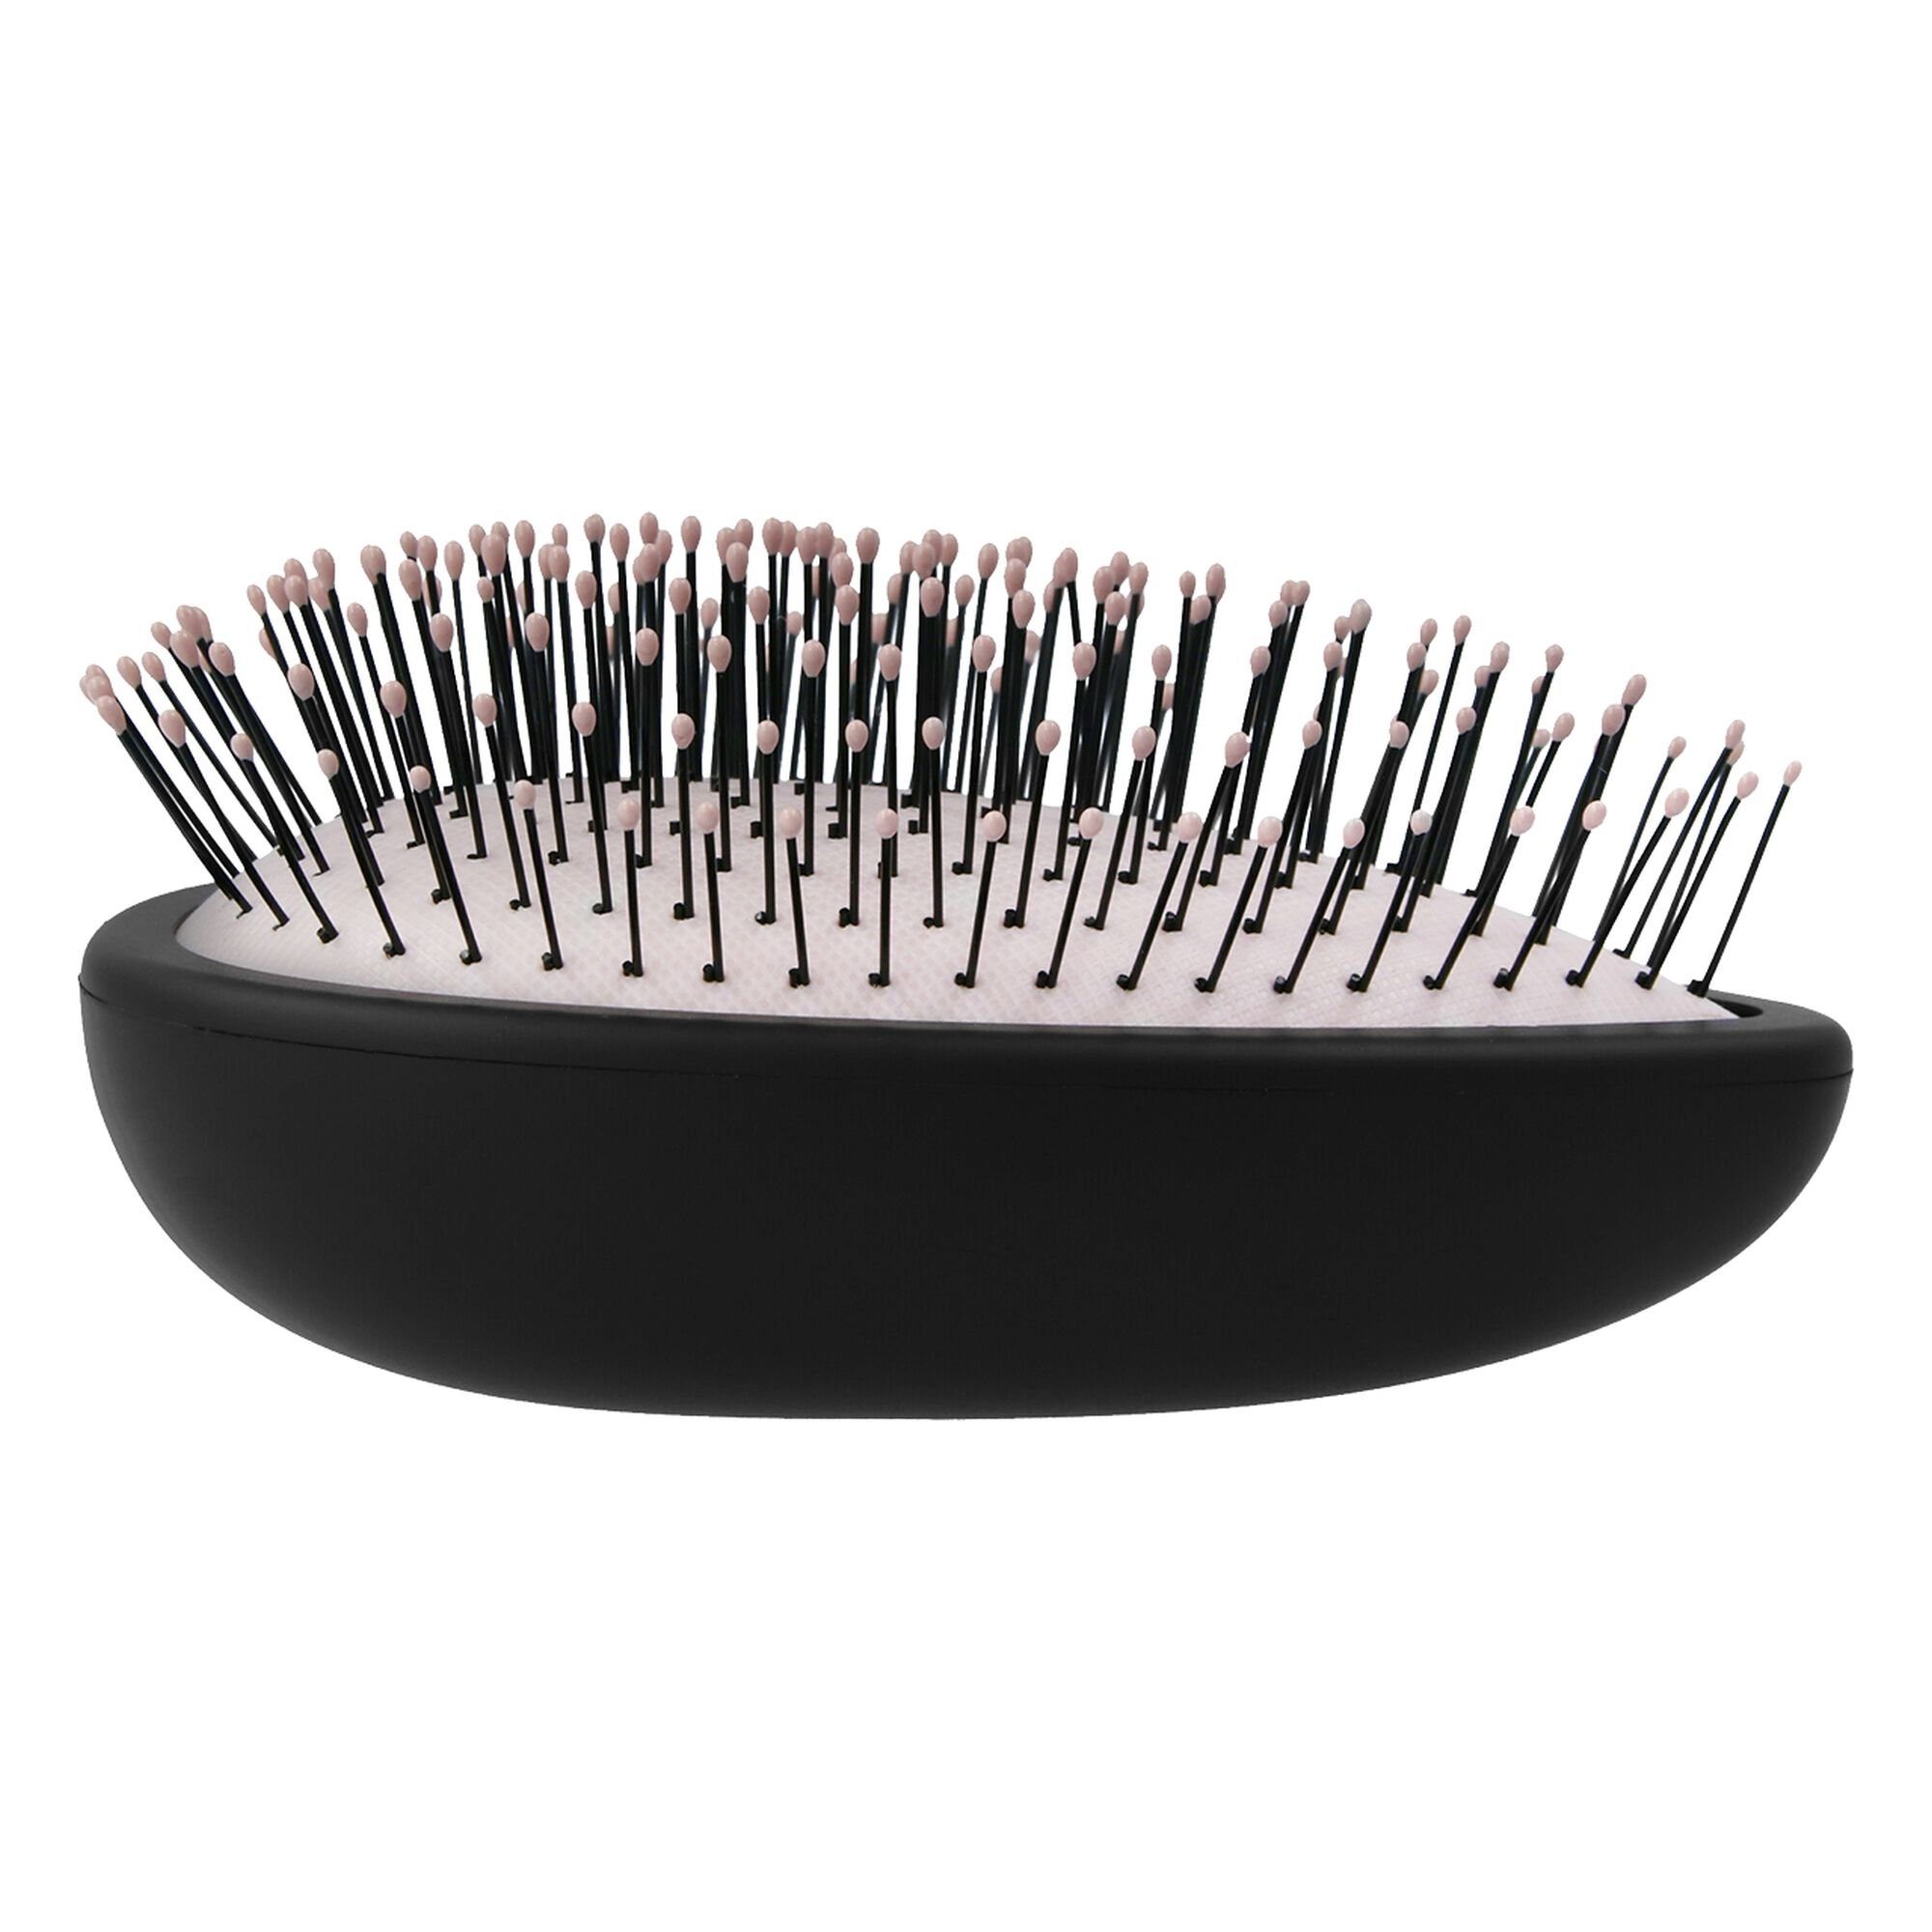 PARSA Beauty Haarbürste Styler schwarz Entwirrer Compact Haar Entwirrbürste in